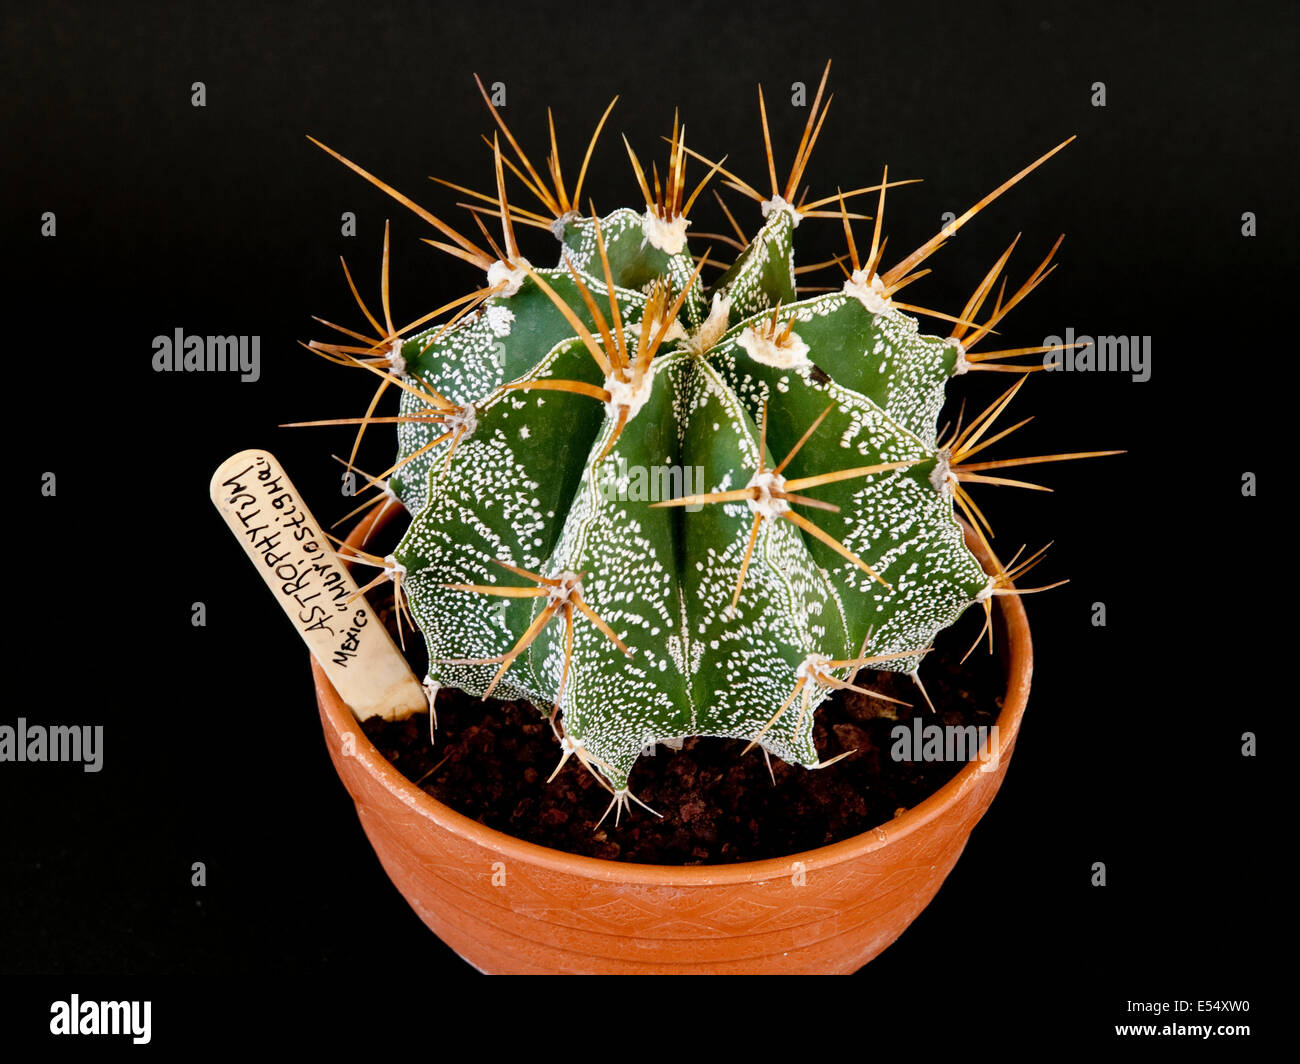 Astrophytum myriostigma, potted plant Stock Photo